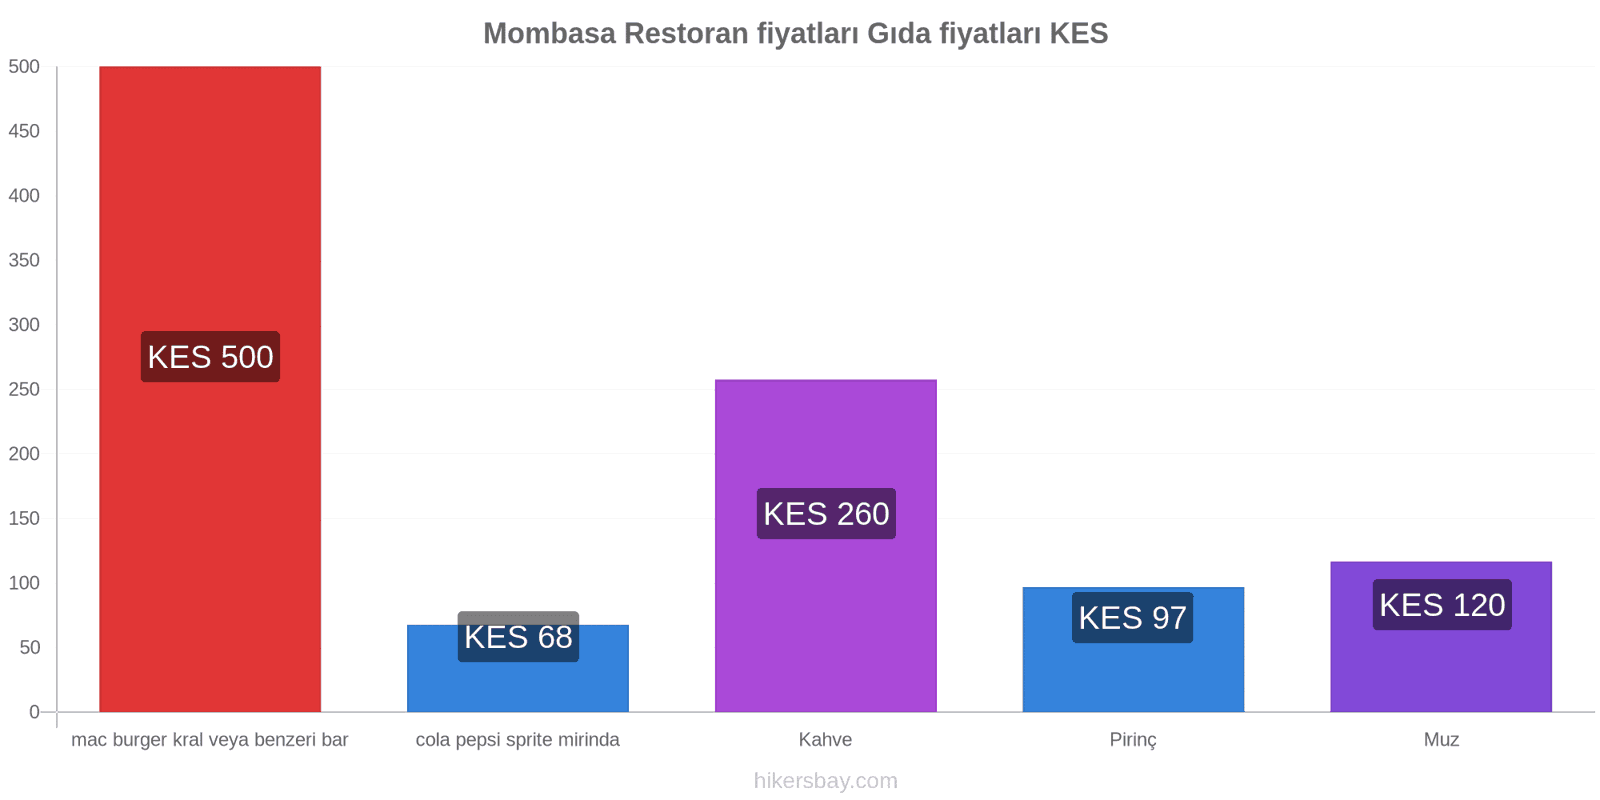 Mombasa fiyat değişiklikleri hikersbay.com